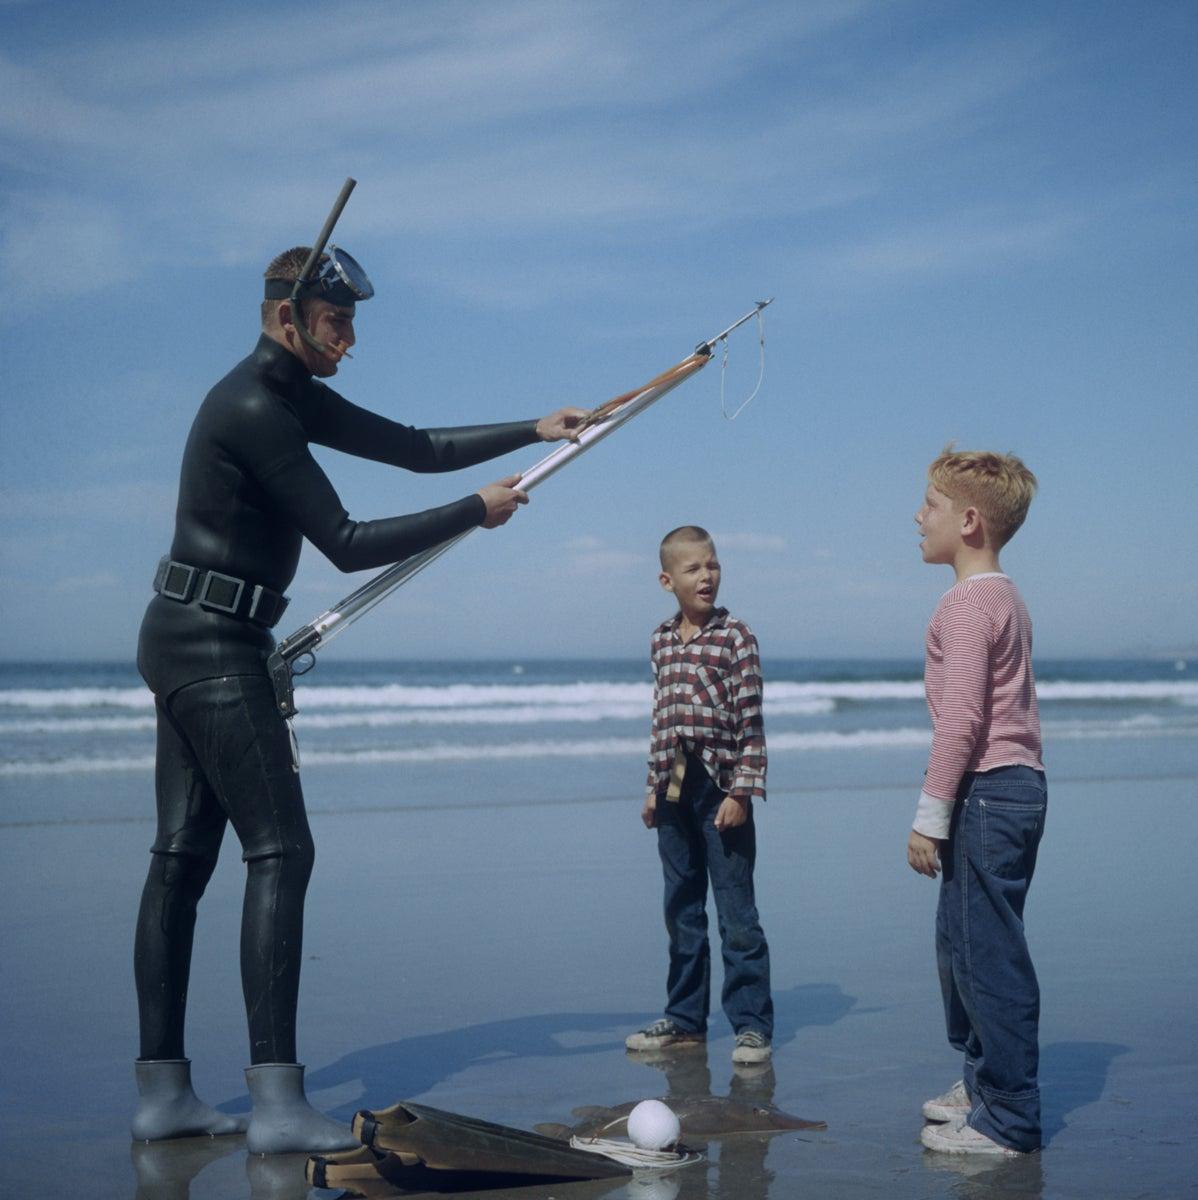 'Speerfischen in San Diego' 1956 Slim Aarons Limitierte Nachlassausgabe

Ein Speerfischer mit Maske, Schnorchel und Neoprenanzug mit zwei Jungen an einem Strand in San Diego, Kalifornien, Oktober 1956. 

Hergestellt aus der